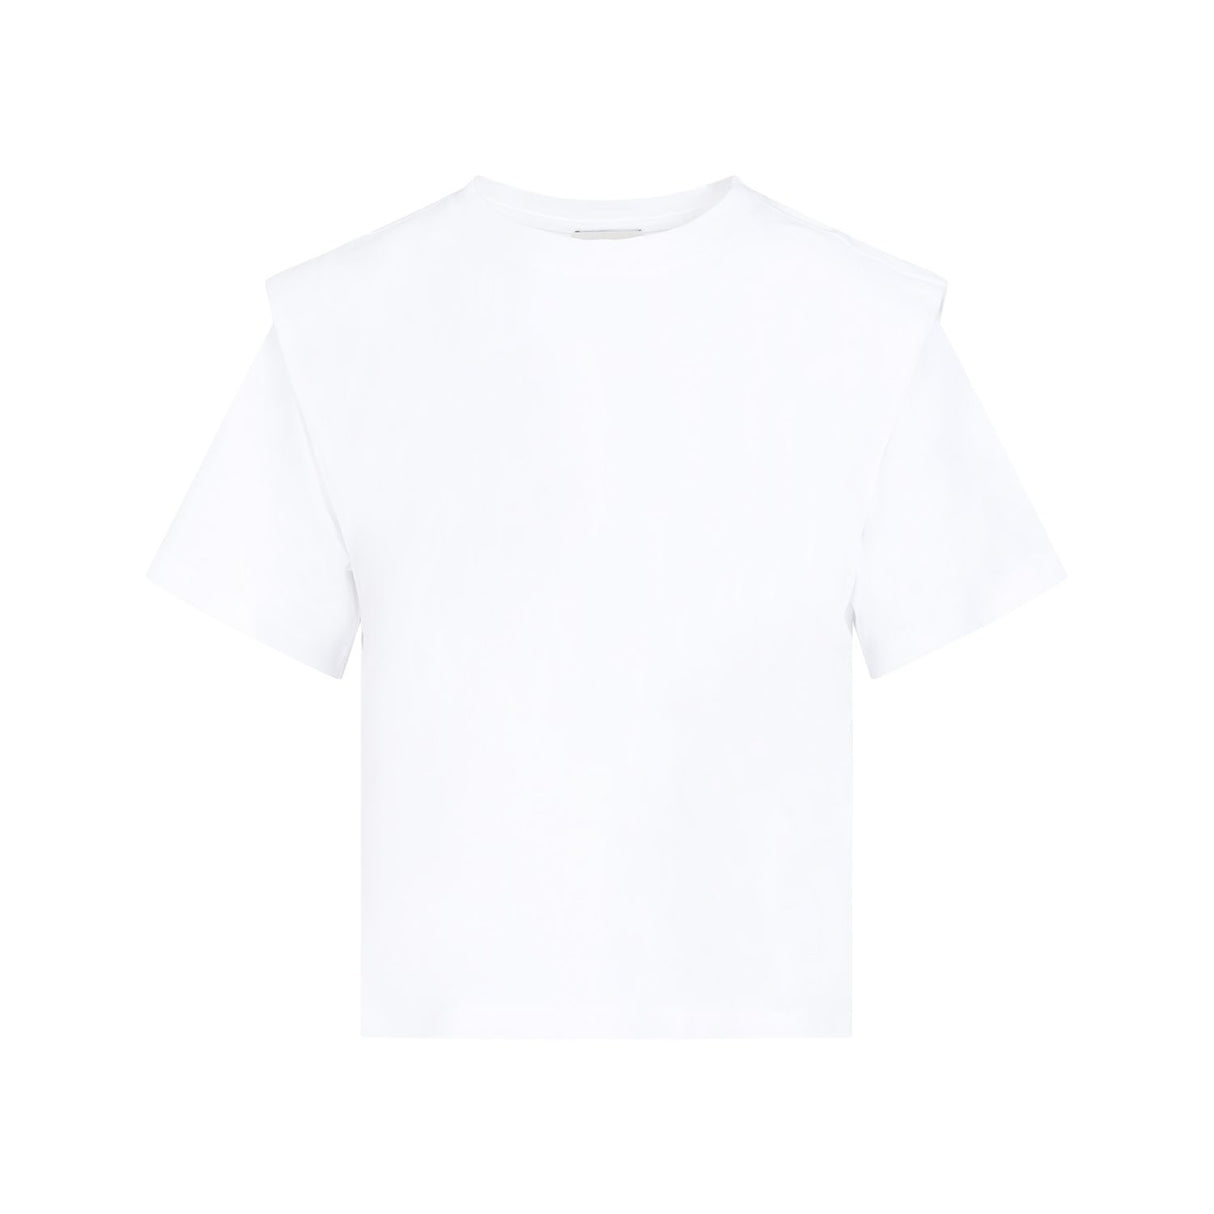 日式白色100%純棉女式短袖T恤 - SS24系列